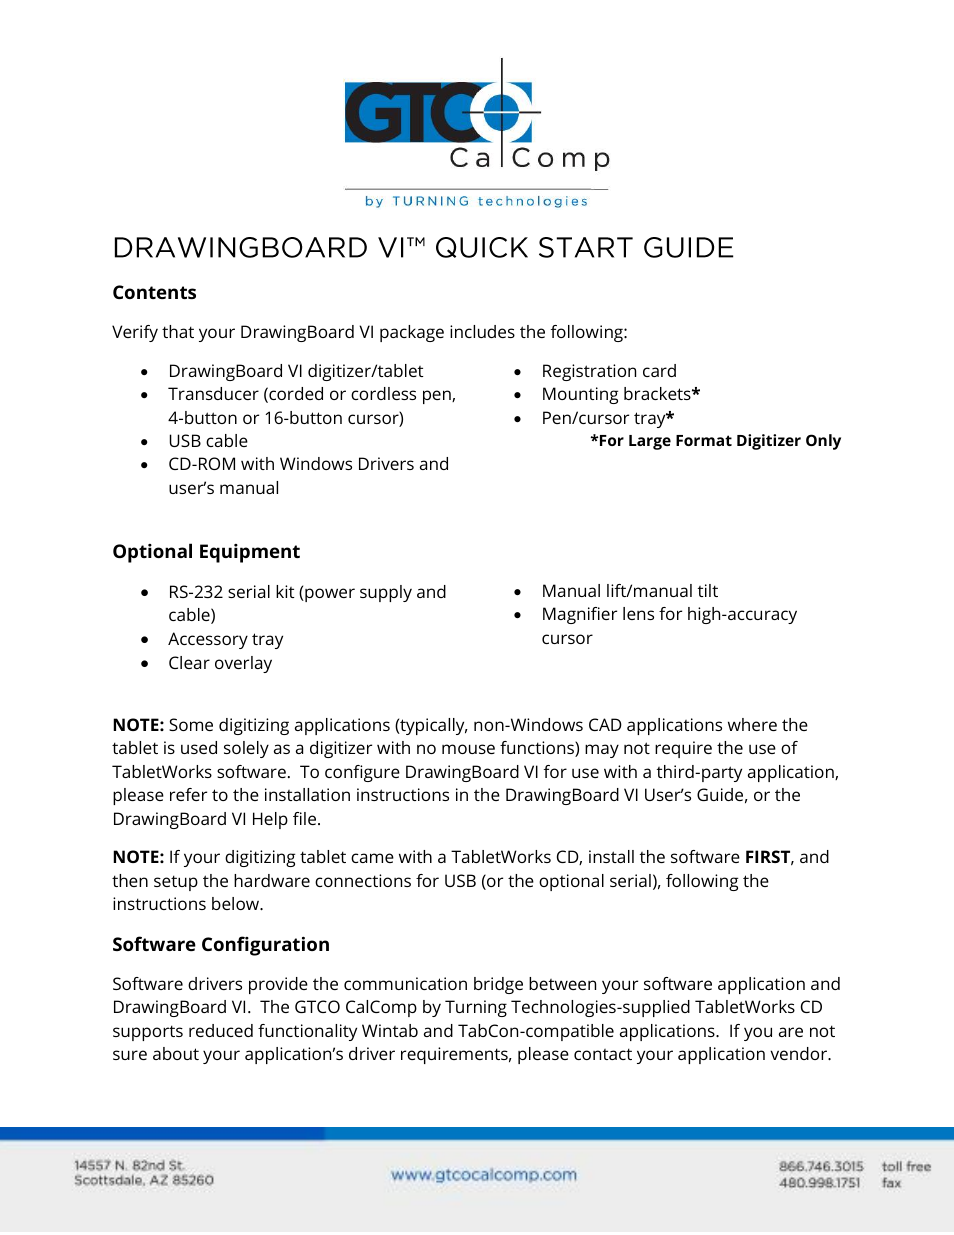 DrawingBoard VI - Quick Start Guide